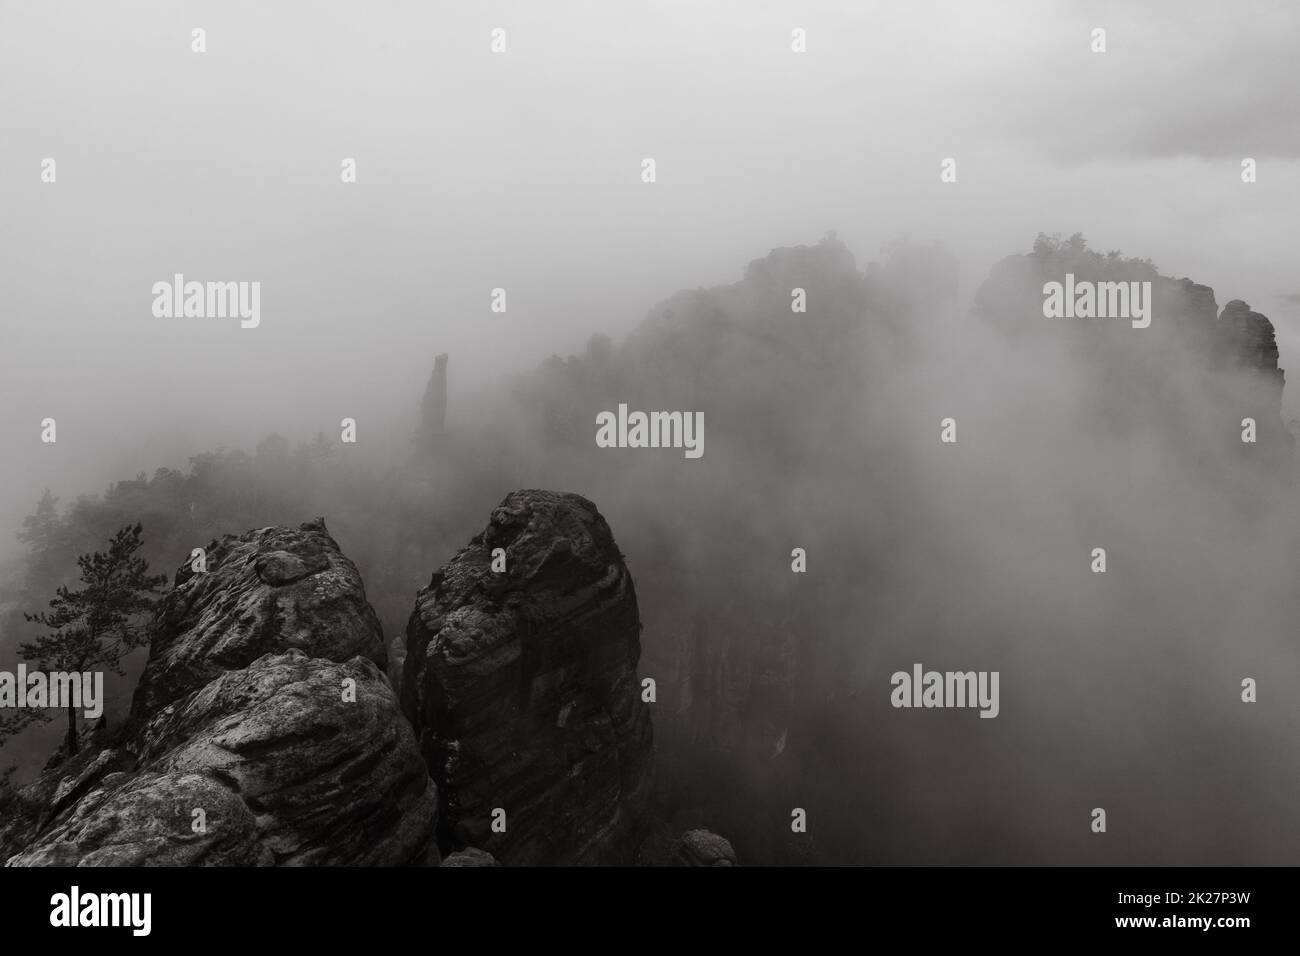 Una mattina presto nuvolosa in montagna. Schrammsteine - un gruppo di rocce è un lungo, steso-fuori, molto frastagliato nelle montagne di arenaria dell'Elba situato nella Svizzera Sassone nella Germania orientale. Bianco e nero. Foto Stock